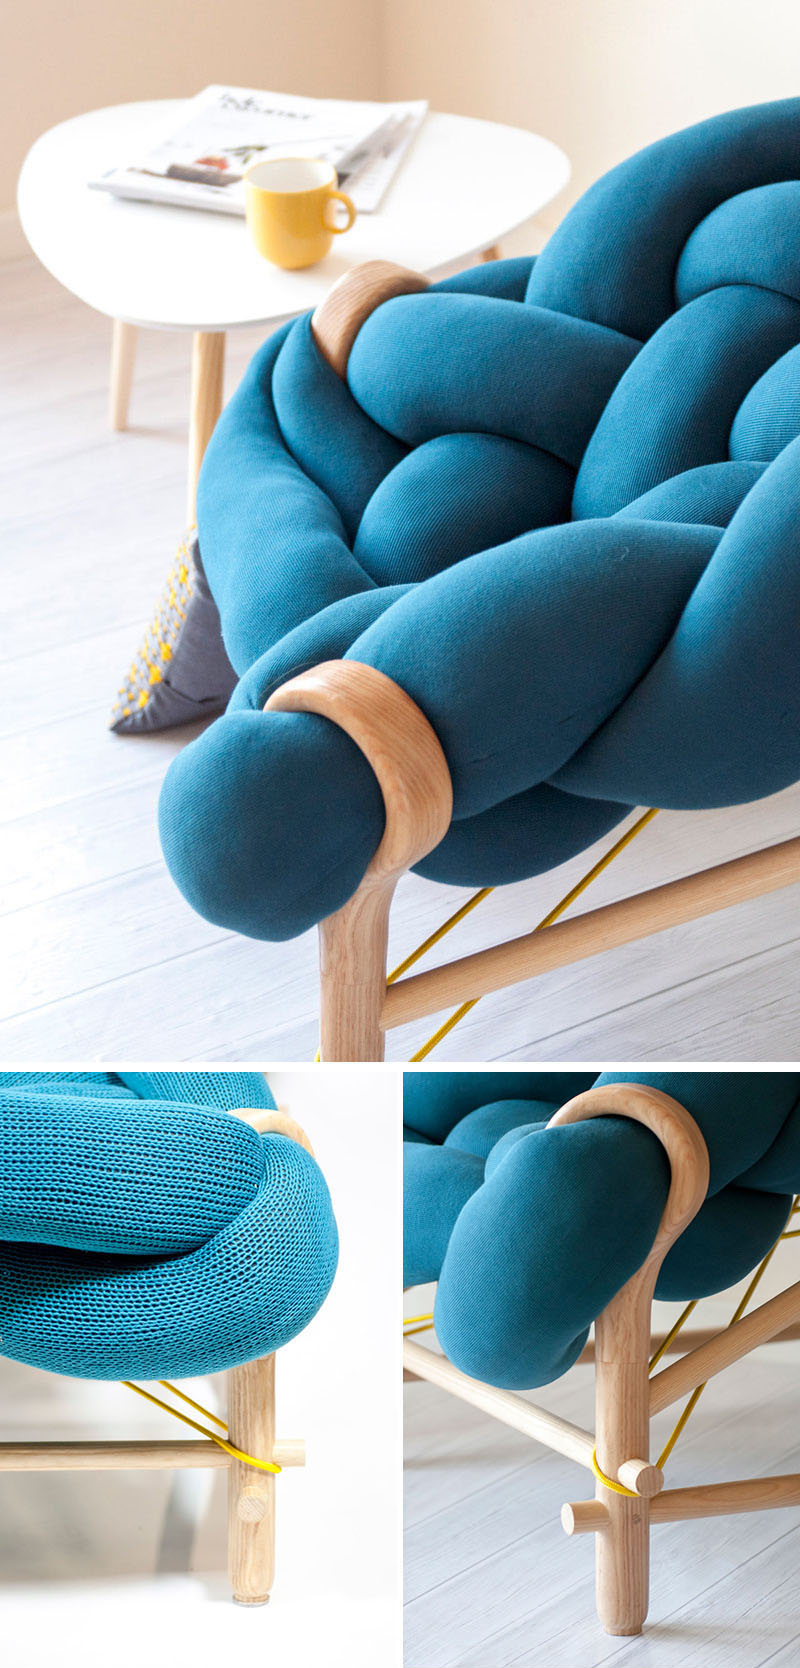 02-designer-combina-trico-e-tecelagem-com-formas-contemporaneas